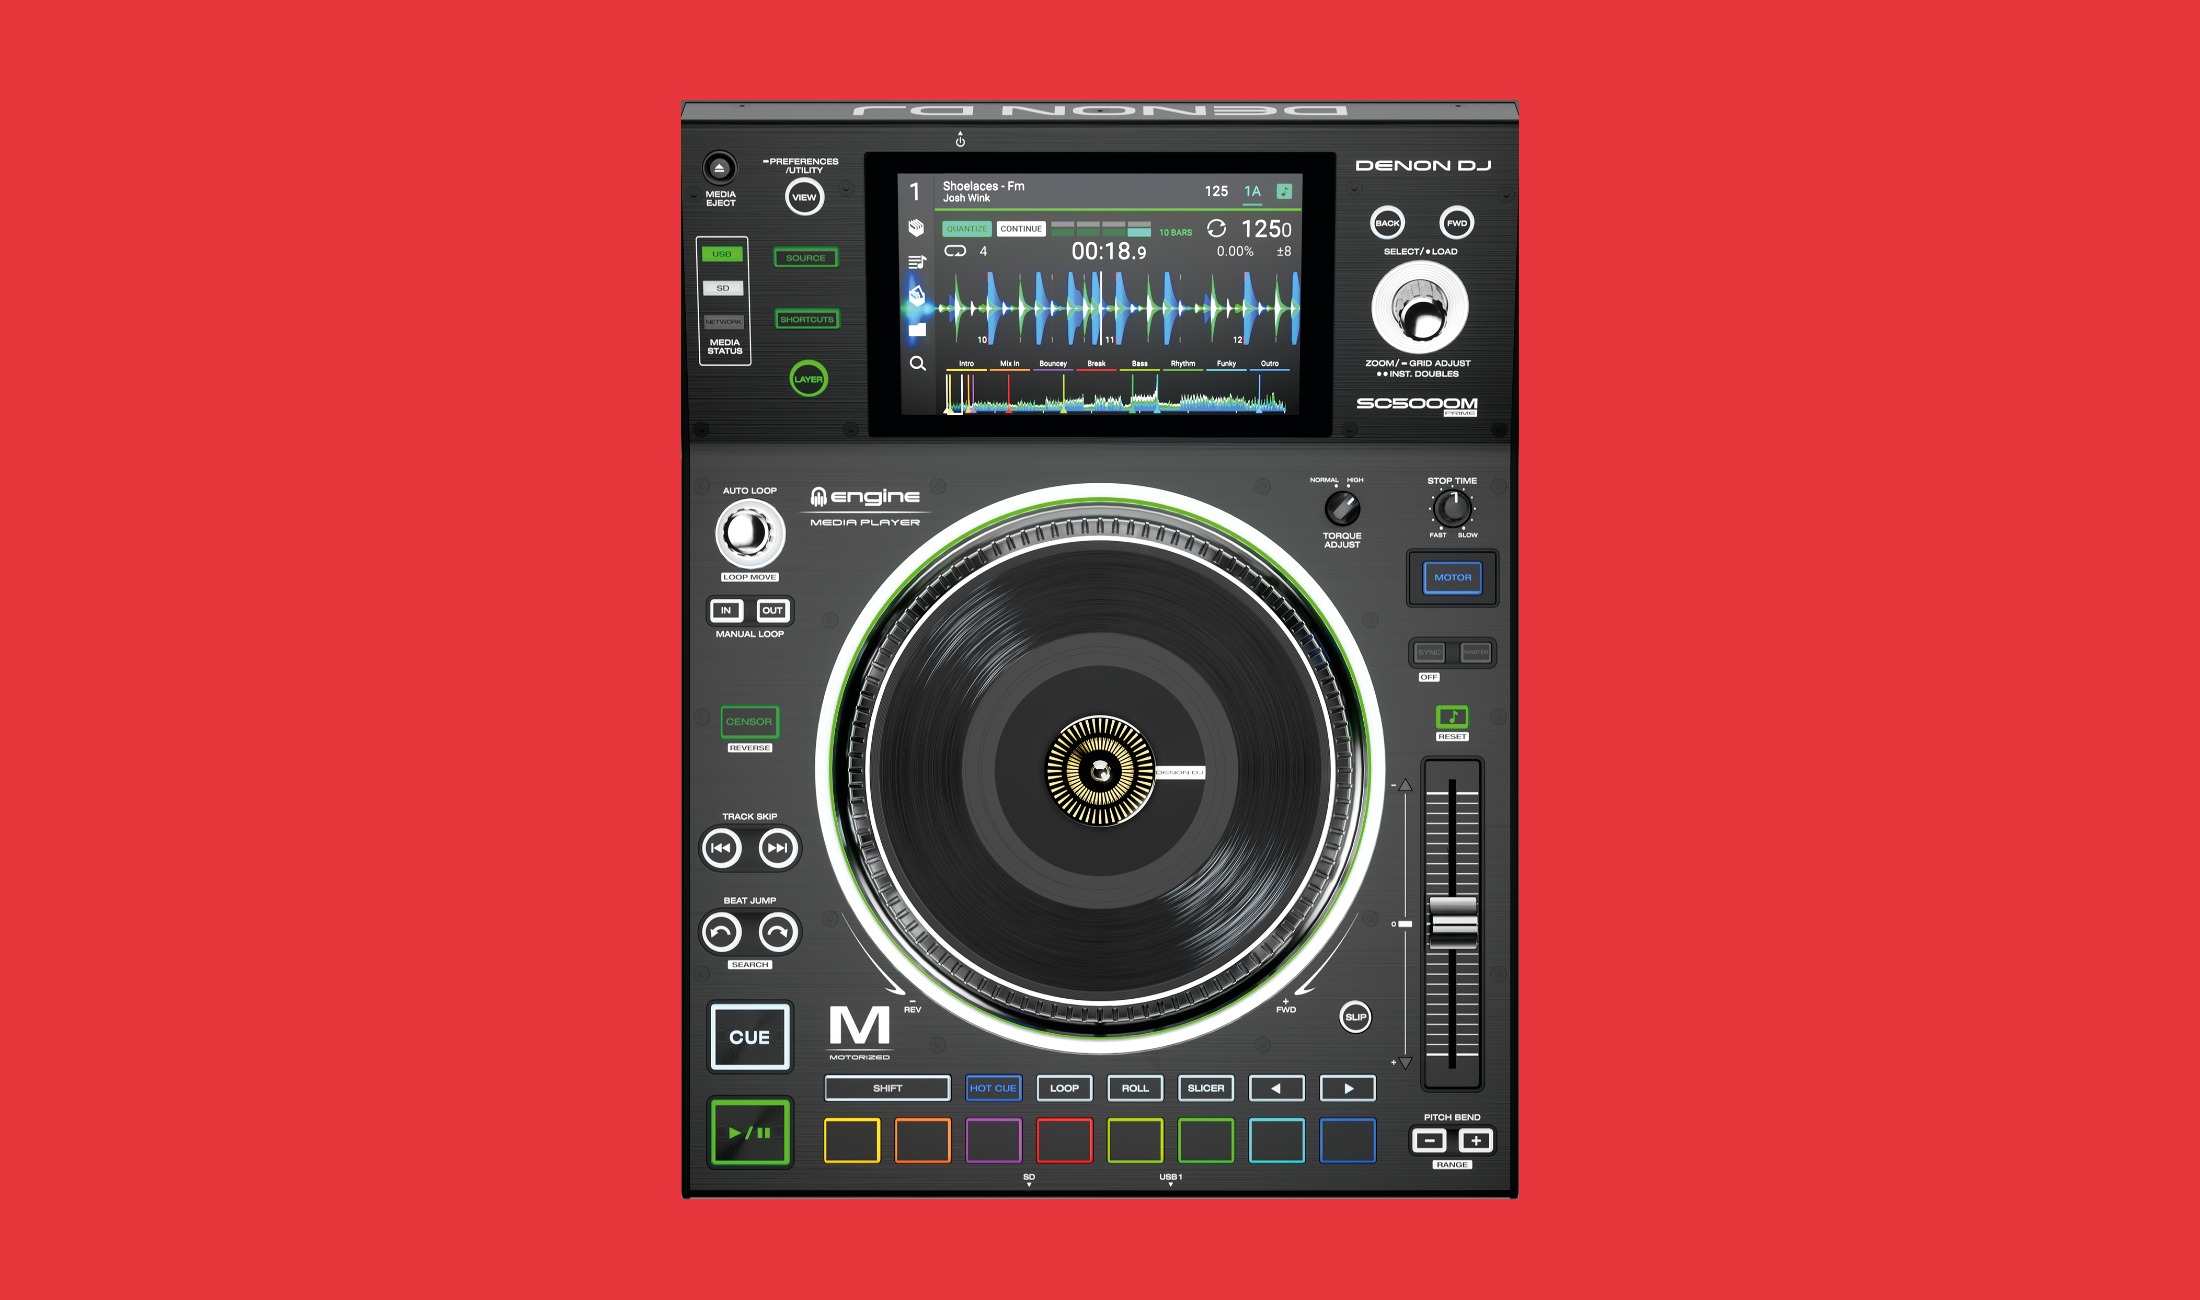 Neu: Denon DJ SC5000M Prime – mit motorisiertem Plattenteller